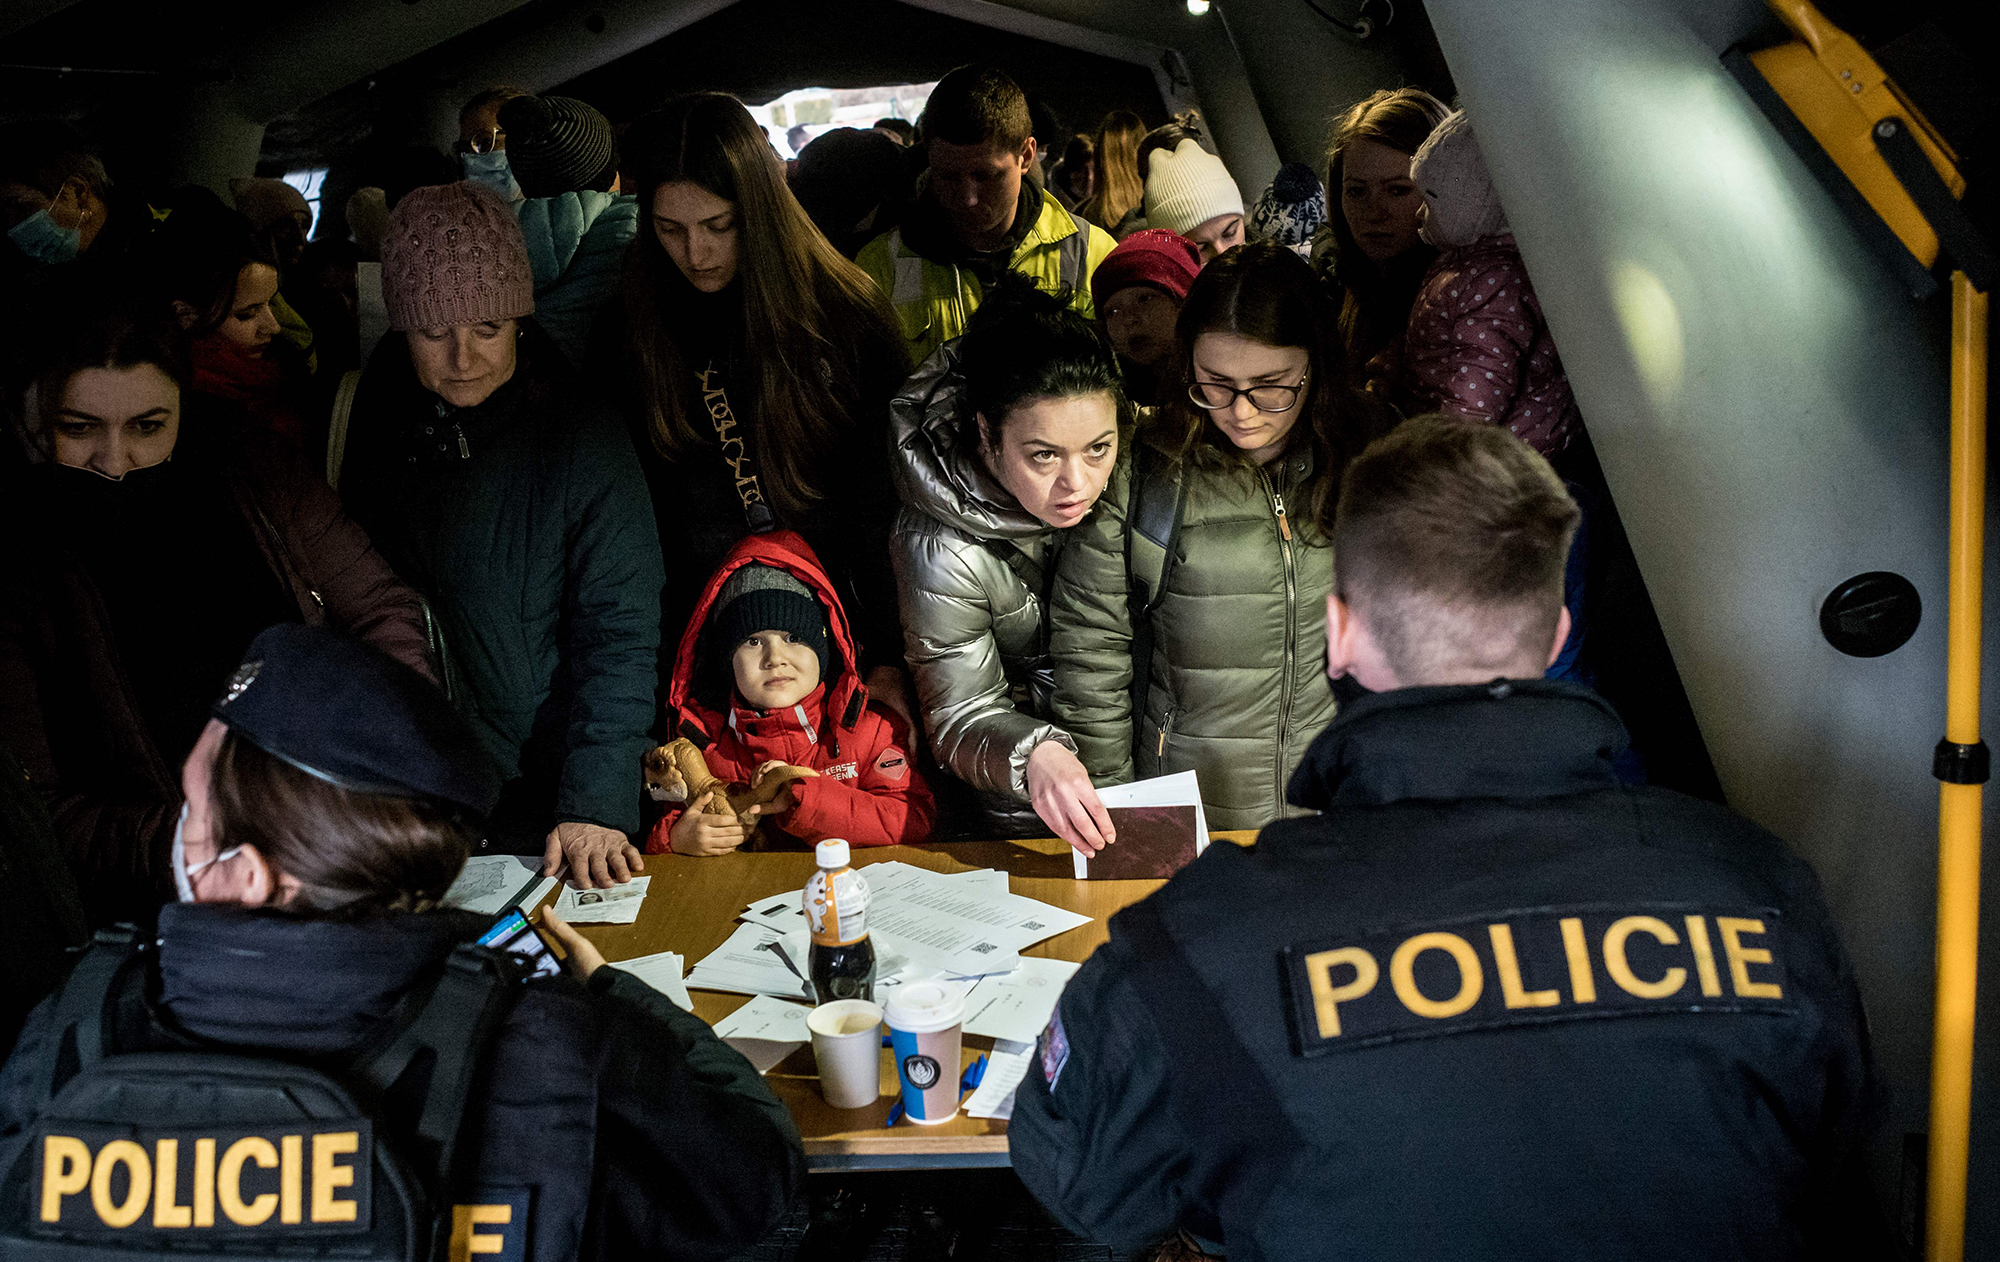 Депортація в Україну: як українцям в Чехії отримати спеціальну візу, щоб залишитися в країні